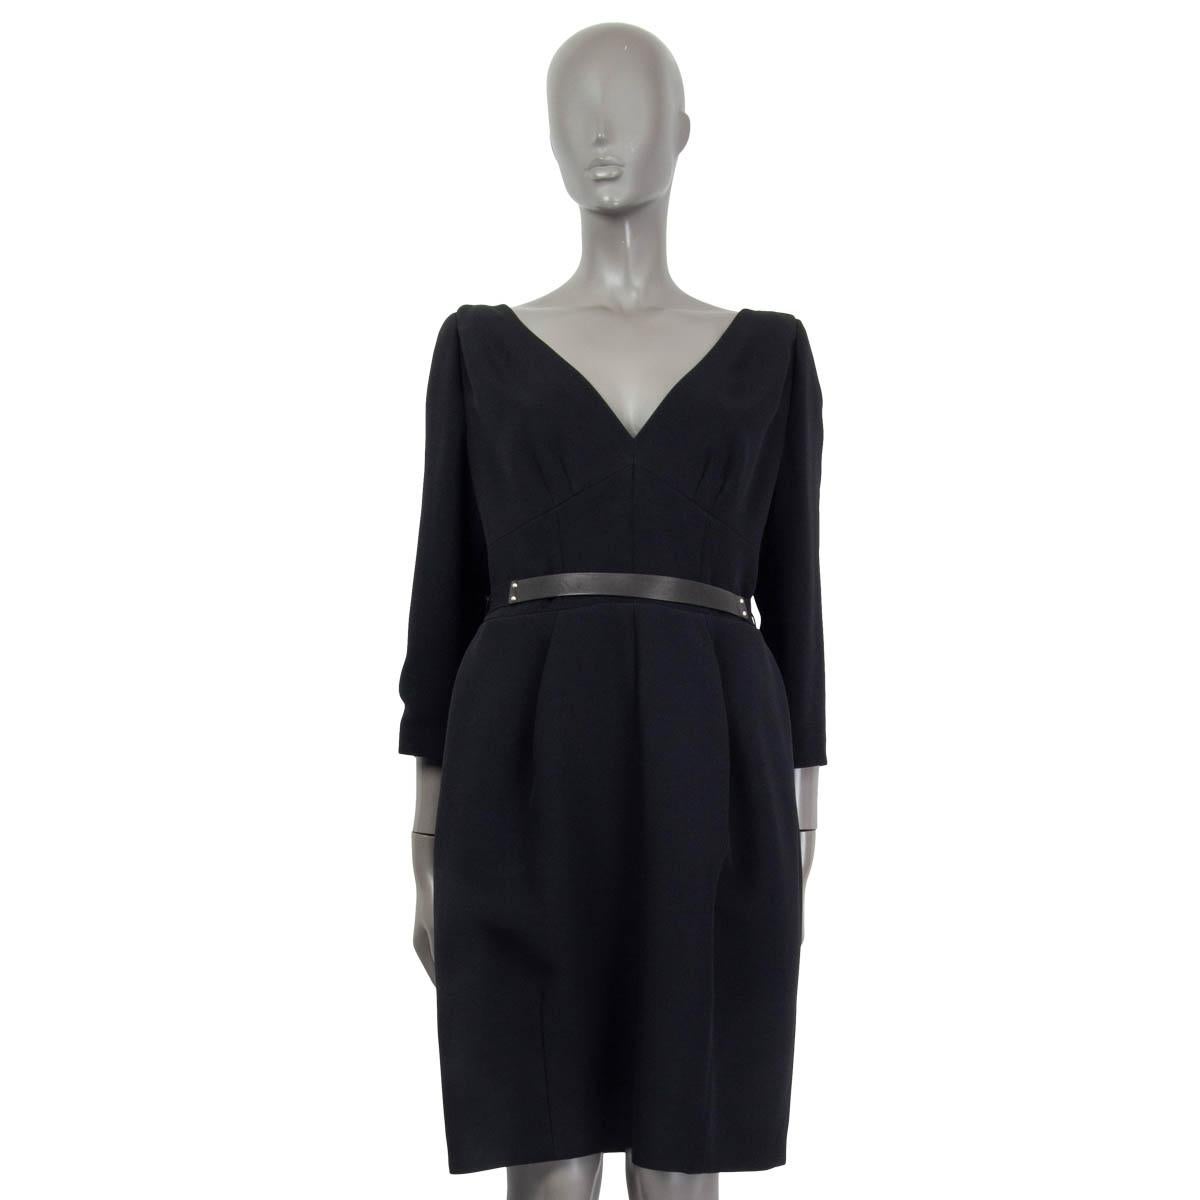 100% authentisches Louis Vuitton Kleid mit Ledergürtel aus schwarzem Acetat (58%) und Viskose (42%). Mit 3/4-Ärmeln, V-förmigem Kragen und zwei Eingrifftaschen auf der Vorderseite. Lässt sich mit einem silbernen Reißverschluss auf der Rückseite